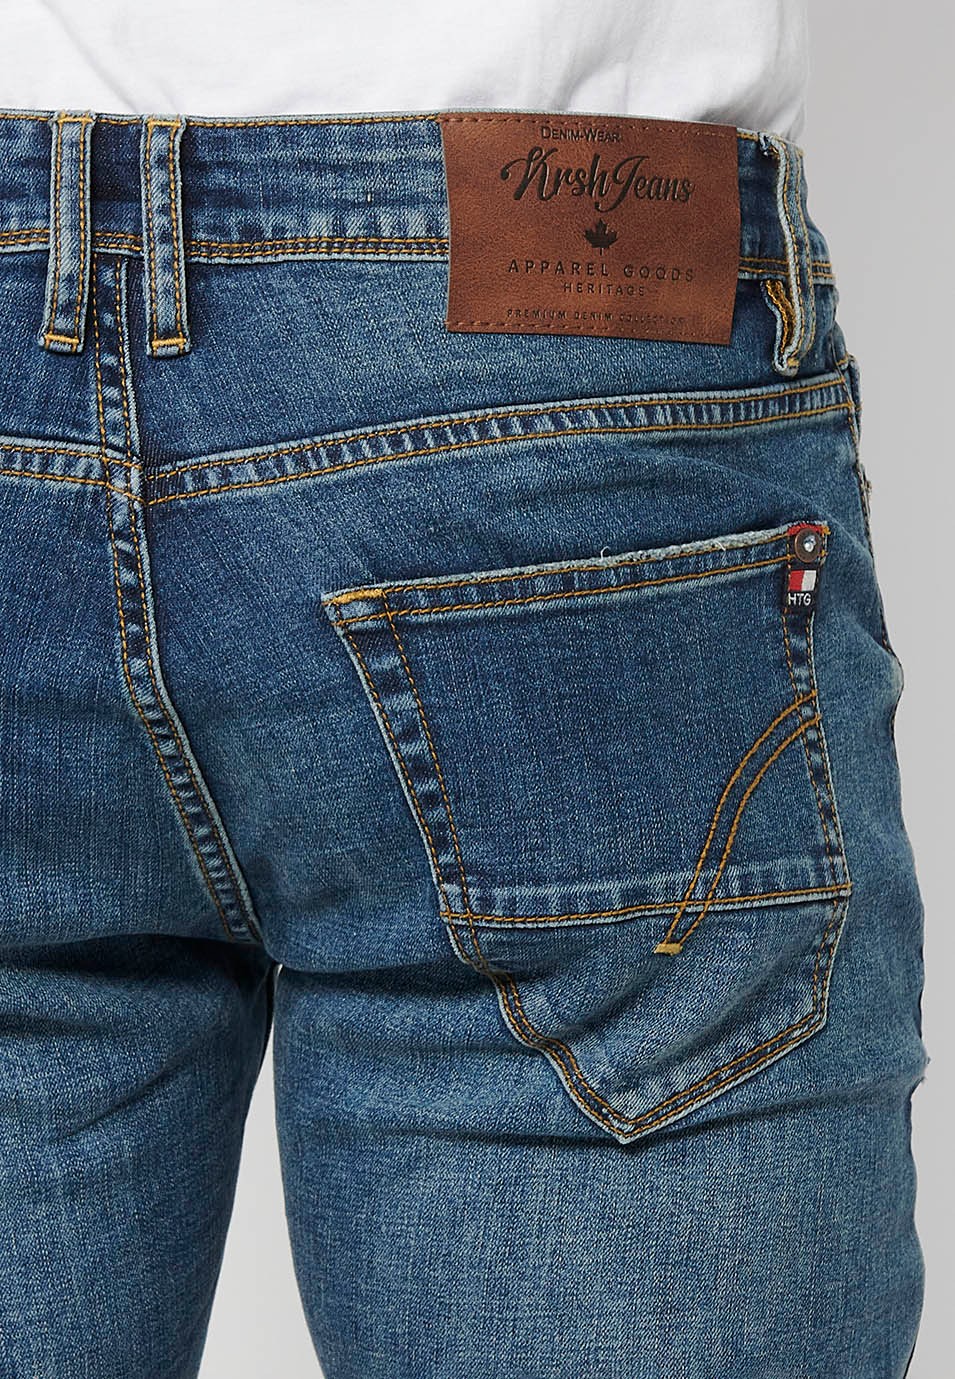 Lange, gerade Jeanshose in normaler Passform mit Reißverschluss und Knopfverschluss vorne und fünf Taschen, eine blaue Tasche für Herren 5